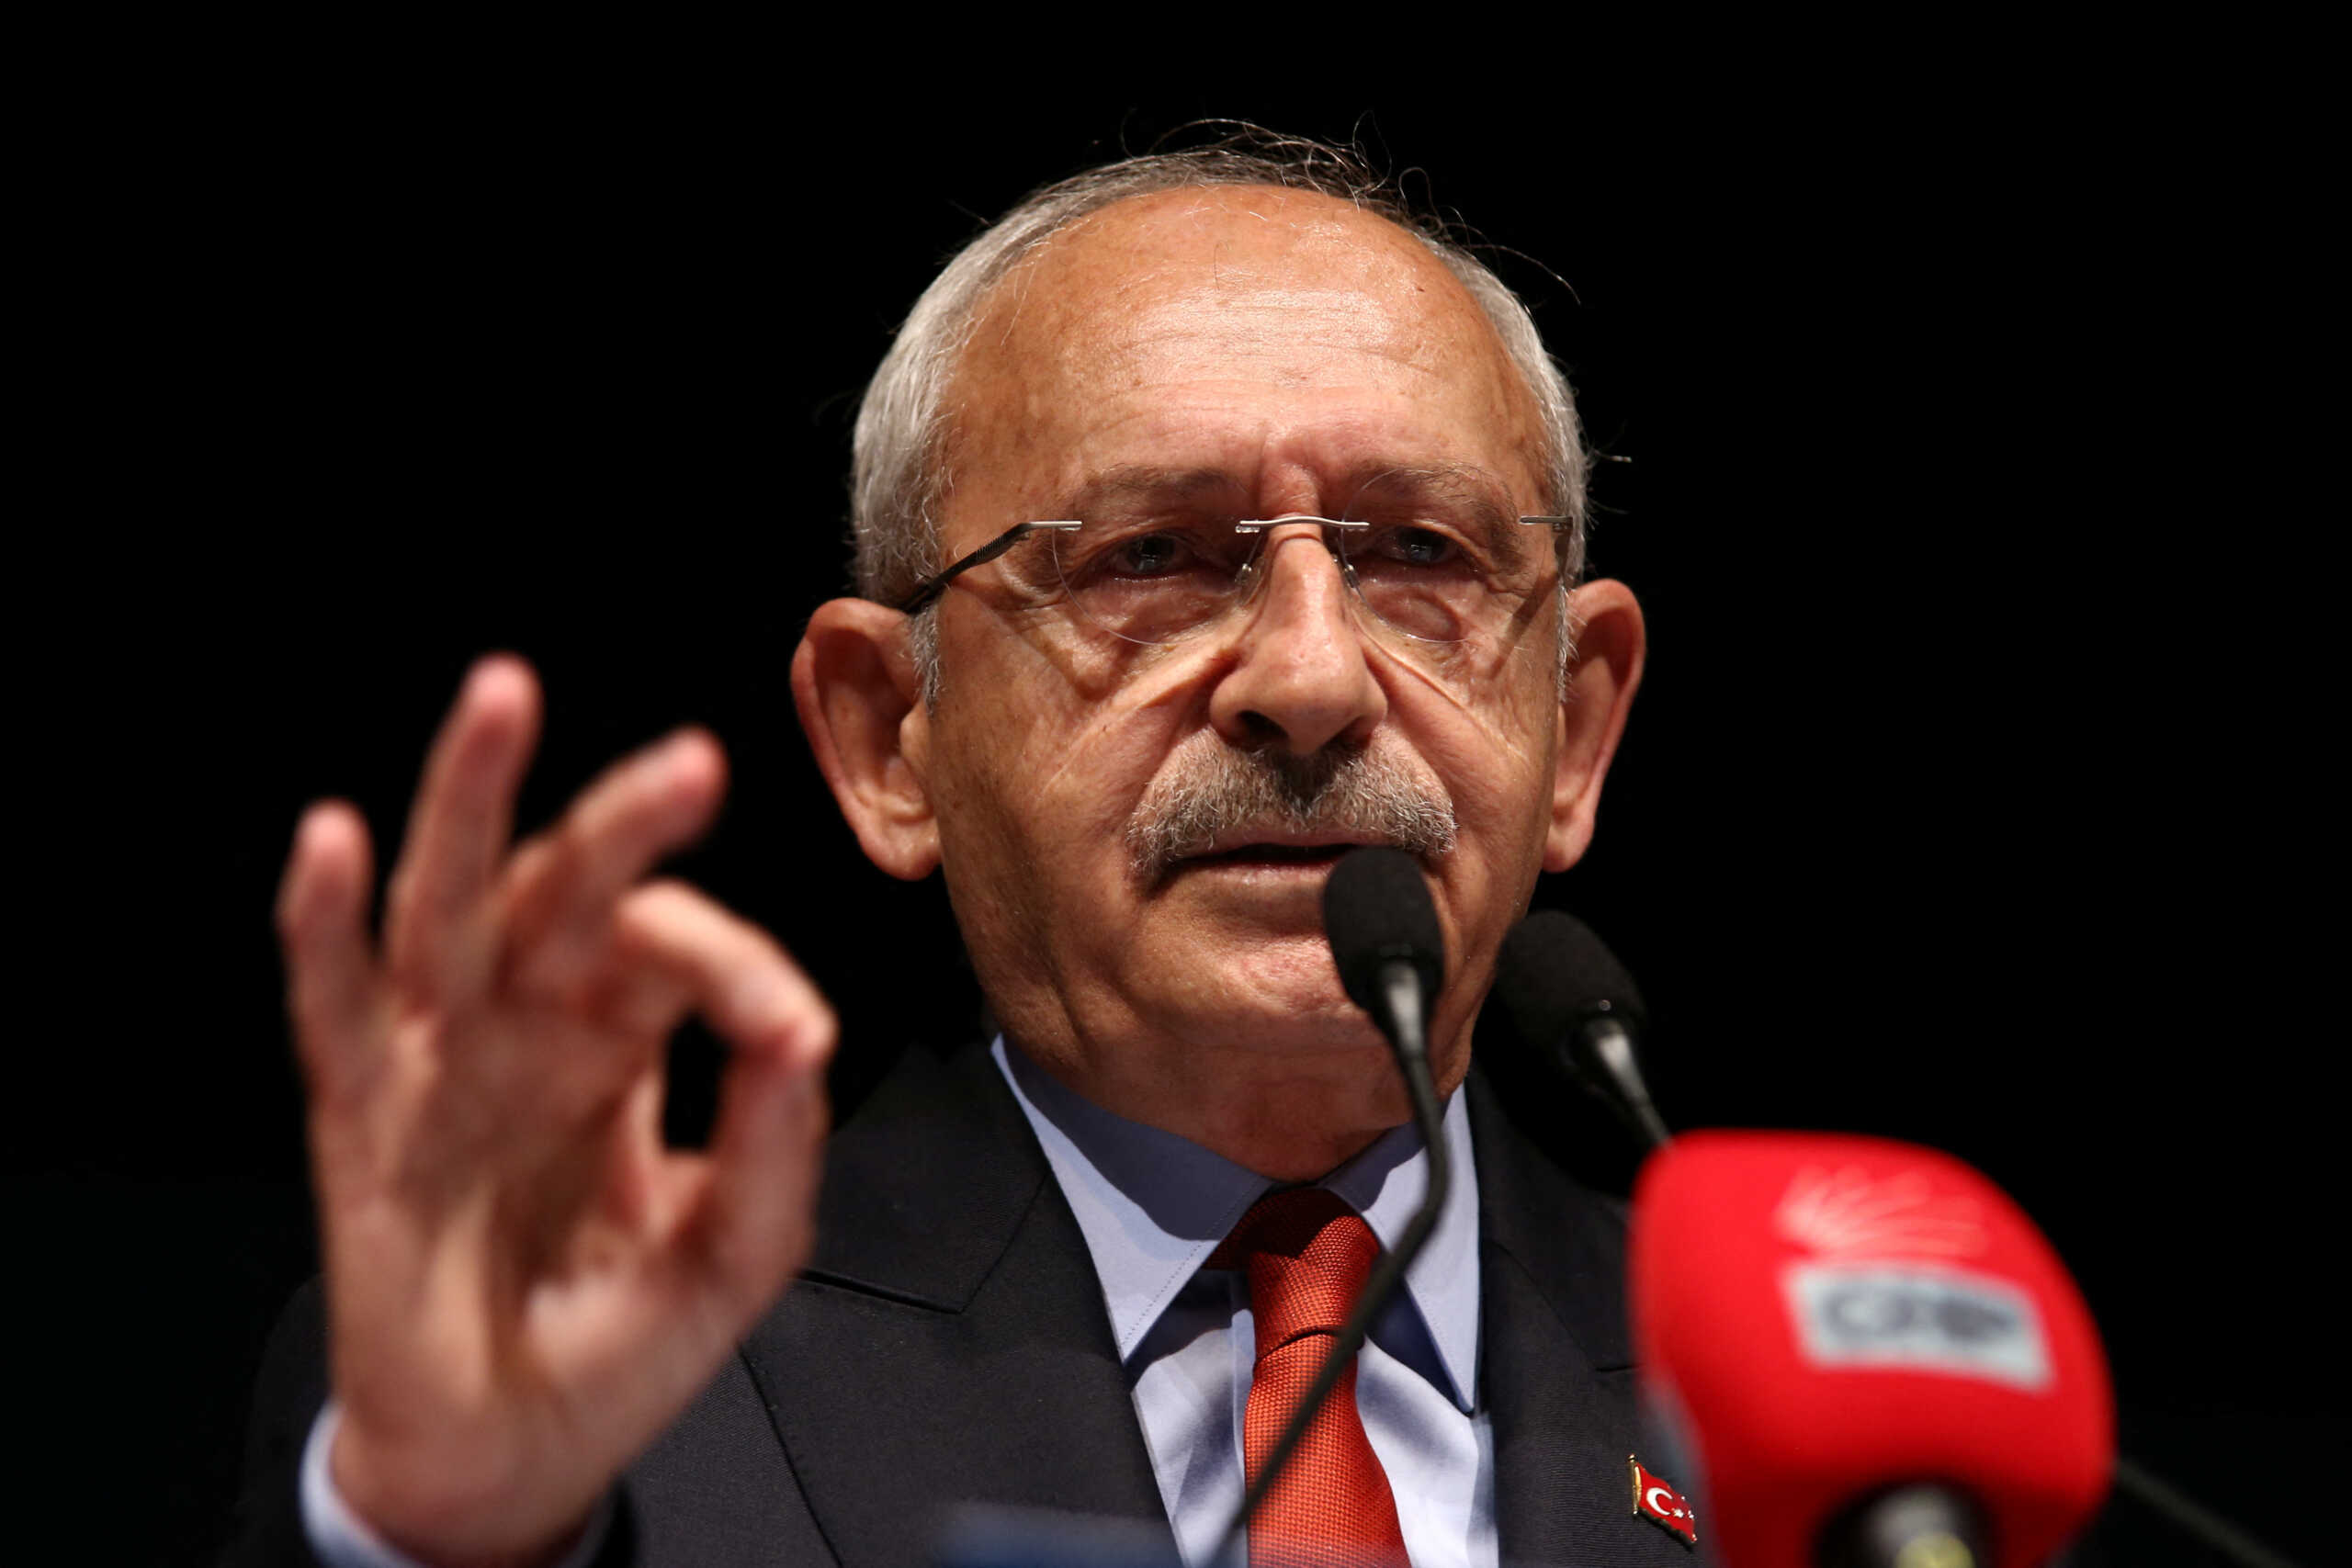 Τουρκία: Κιλιτσντάρογλου στηρίζει ο επικεφαλής εθνικιστικού κόμματος στον δεύτερο γύρο των εκλογών